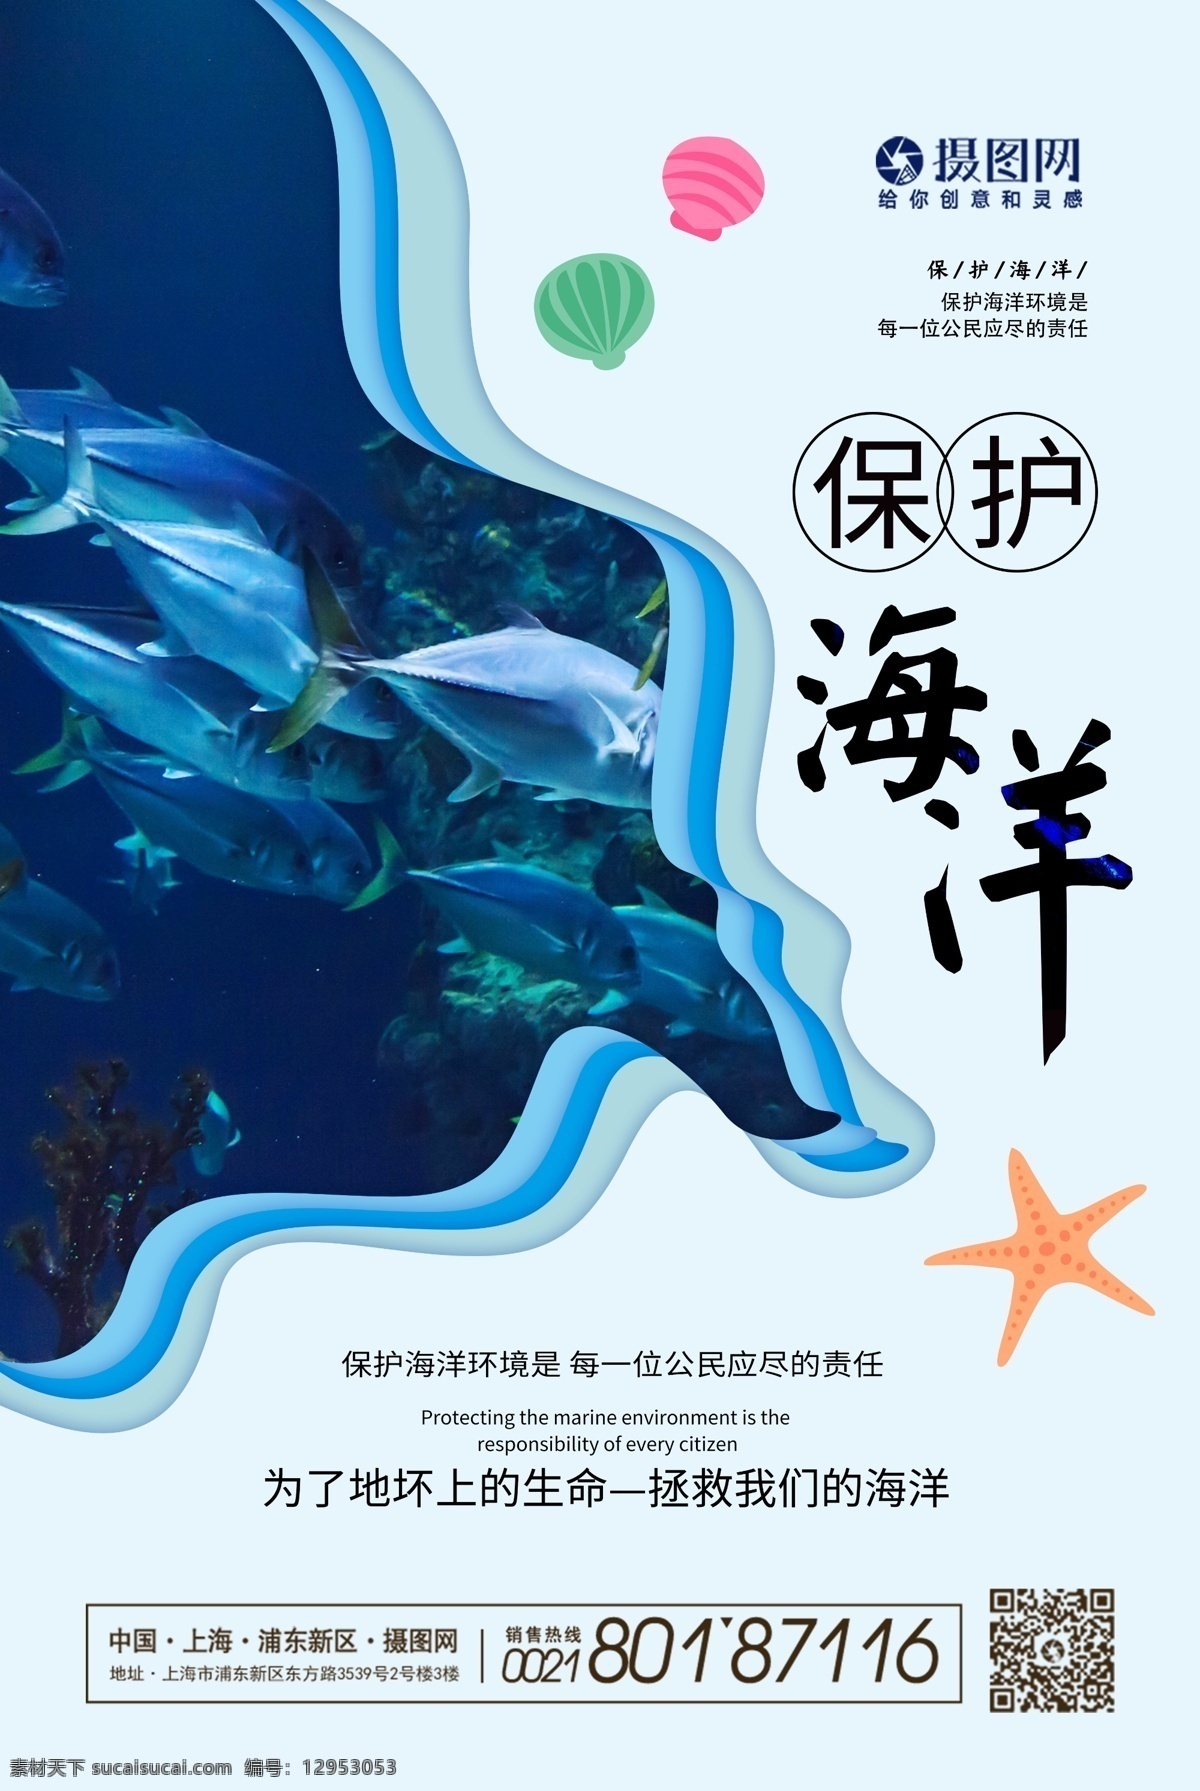 简约 大气 剪纸 风 保护 海洋 公益 海报 保护海洋 环境 公益海报 蓝色 清新 海 海豚 海边 保护自然环境